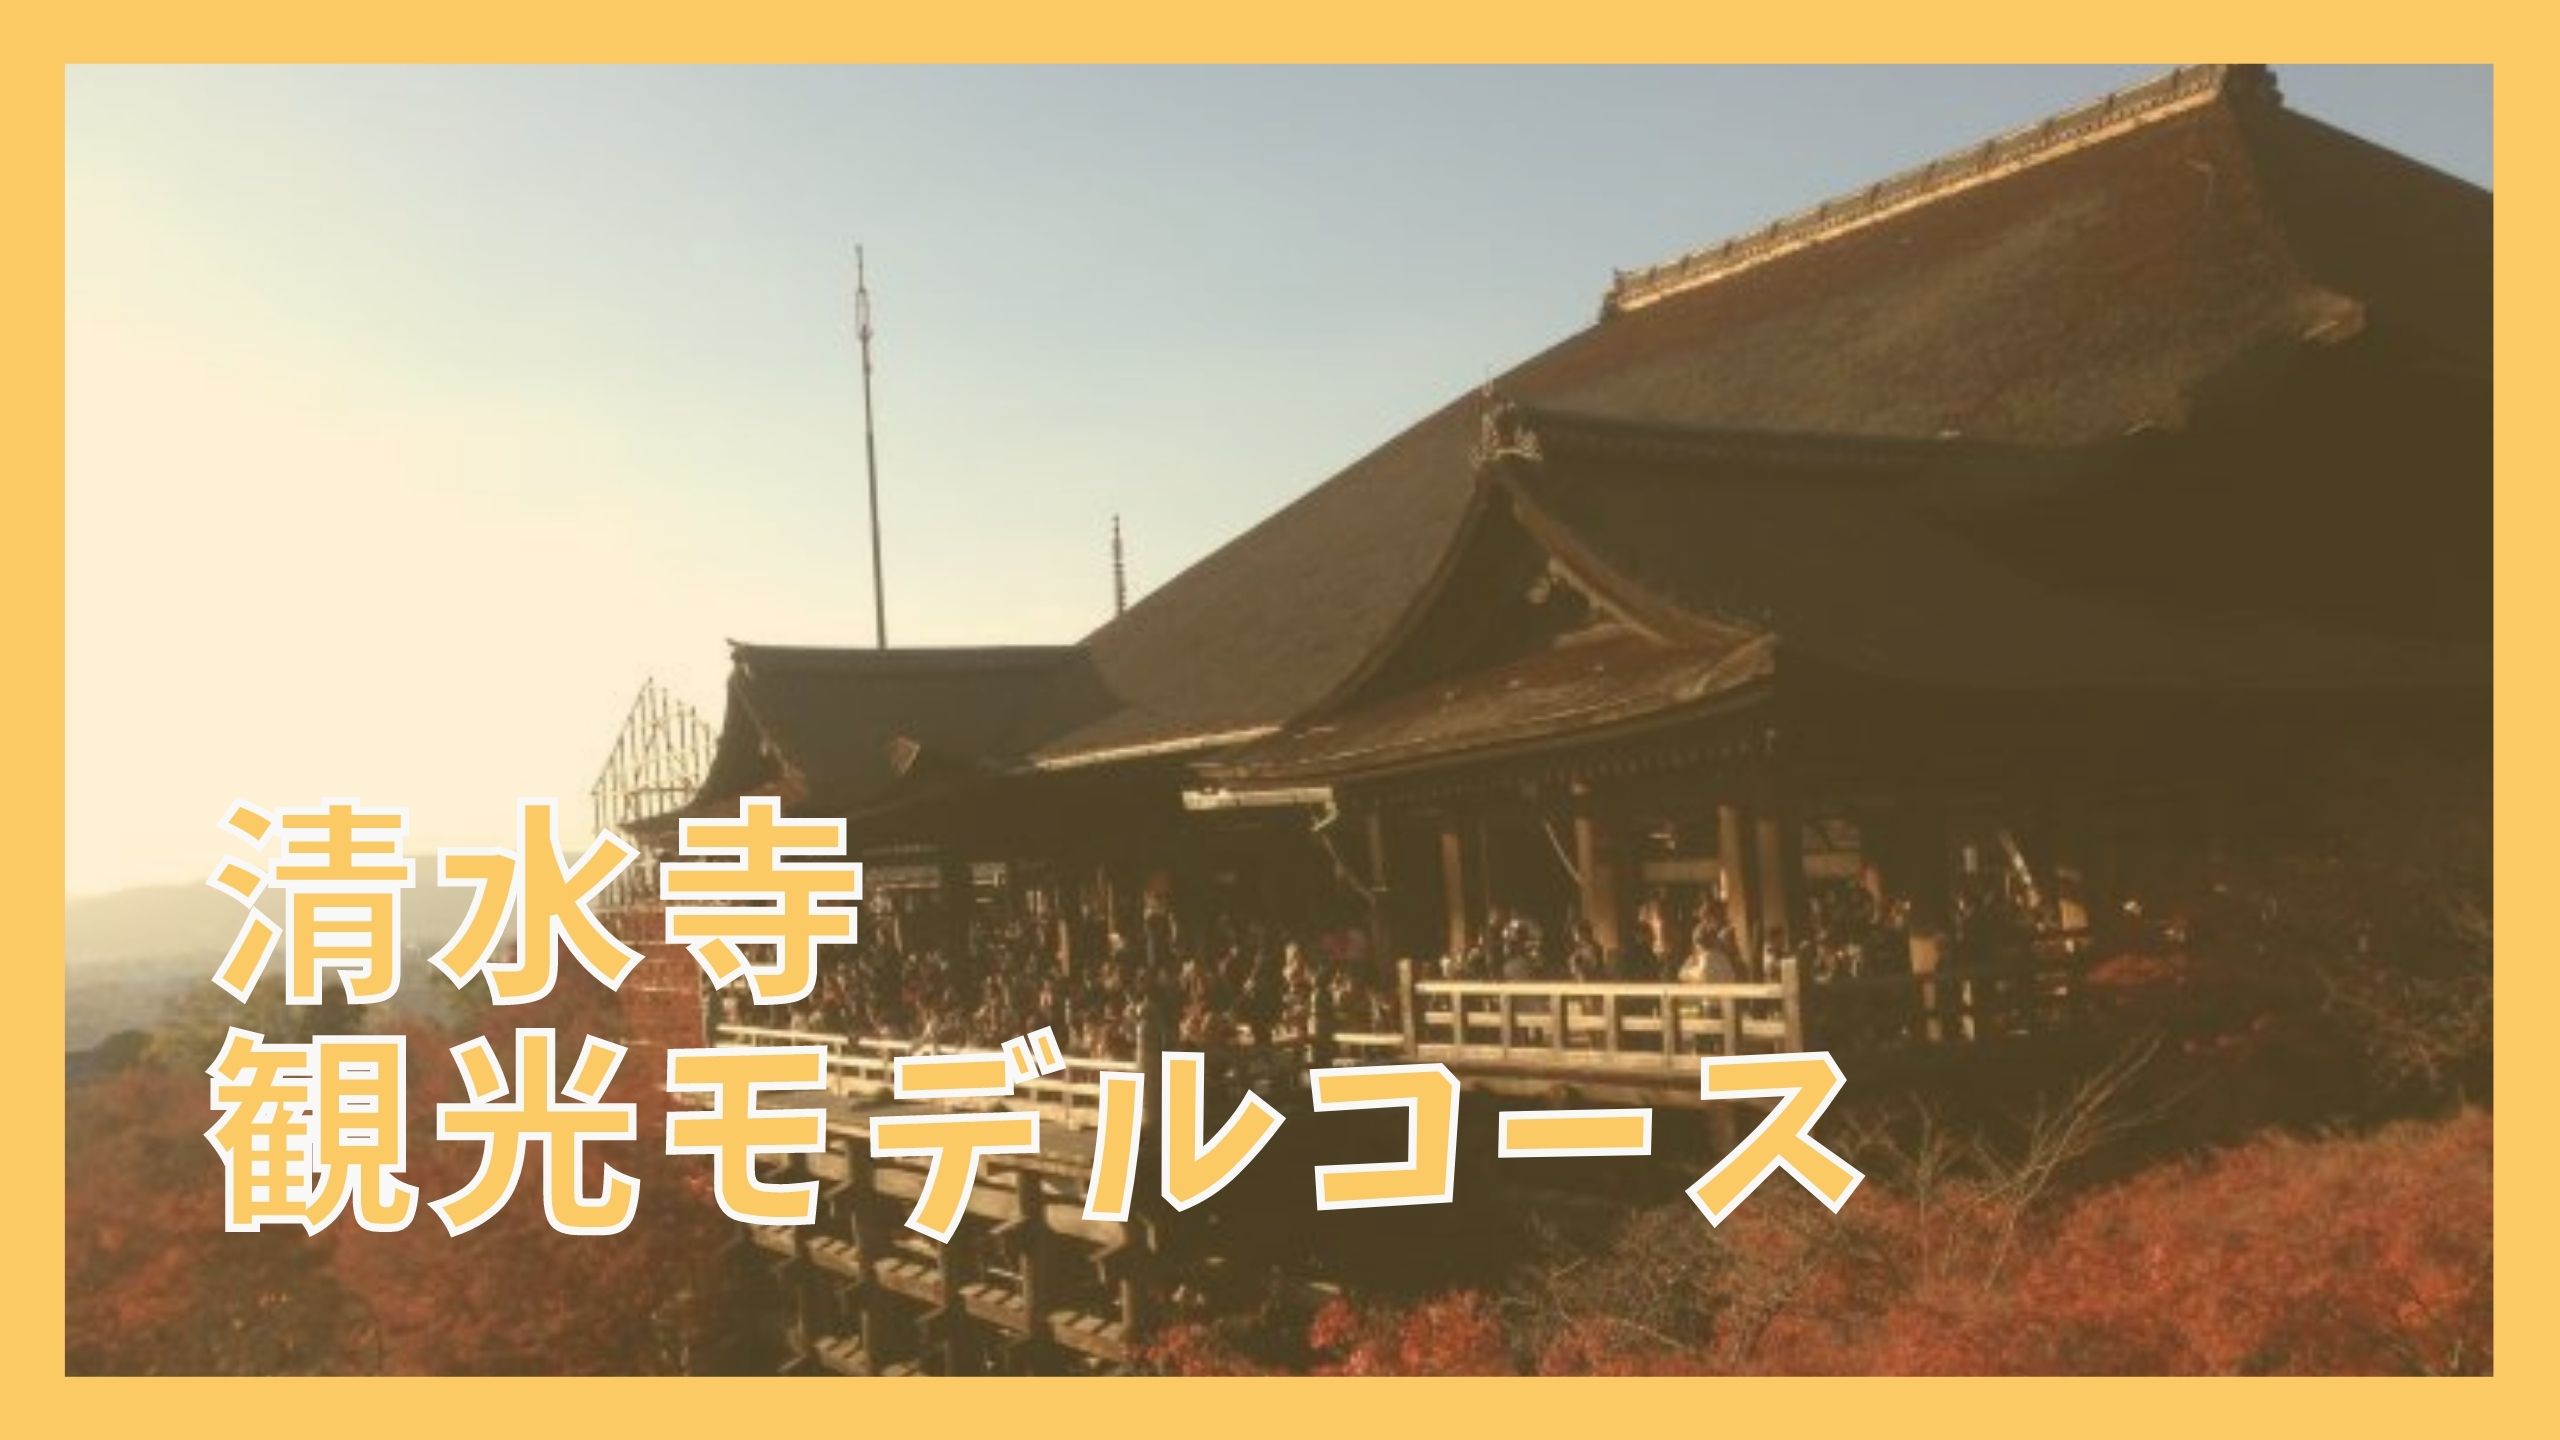 清水寺観光モデルコース 日帰りで巡る9つの観光名所 ジャパンワンダラー